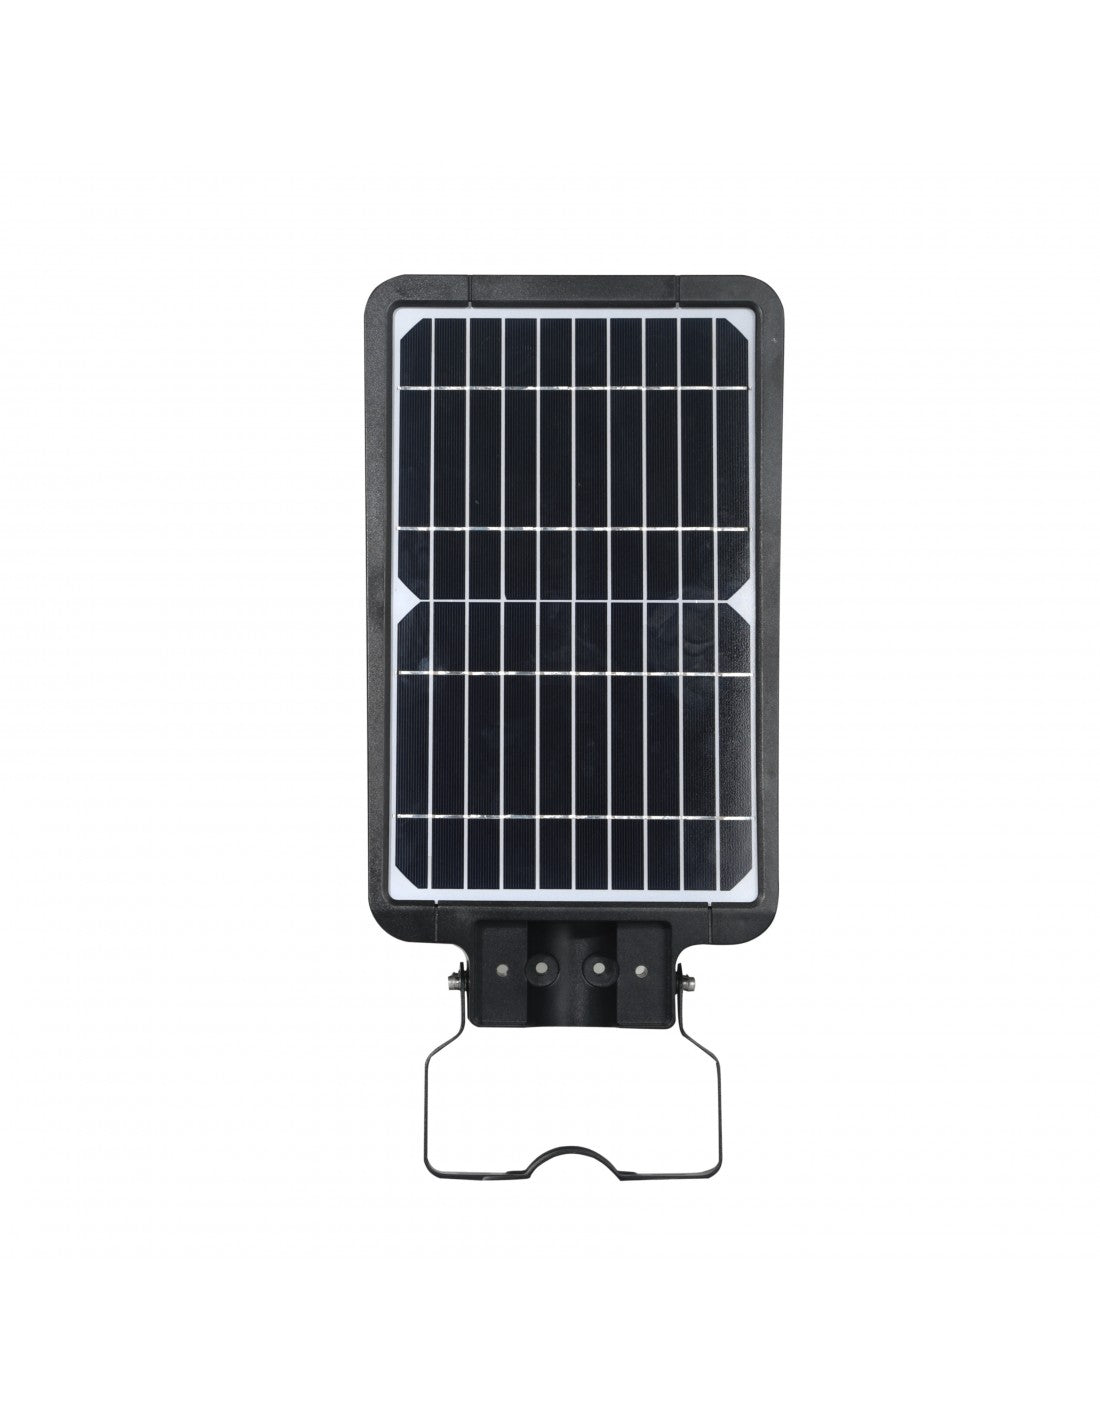 VELAMP – CRUISER: 15 W (1600 lm) solarbetriebene Straßenlaterne mit Bewegungssensor – SL373